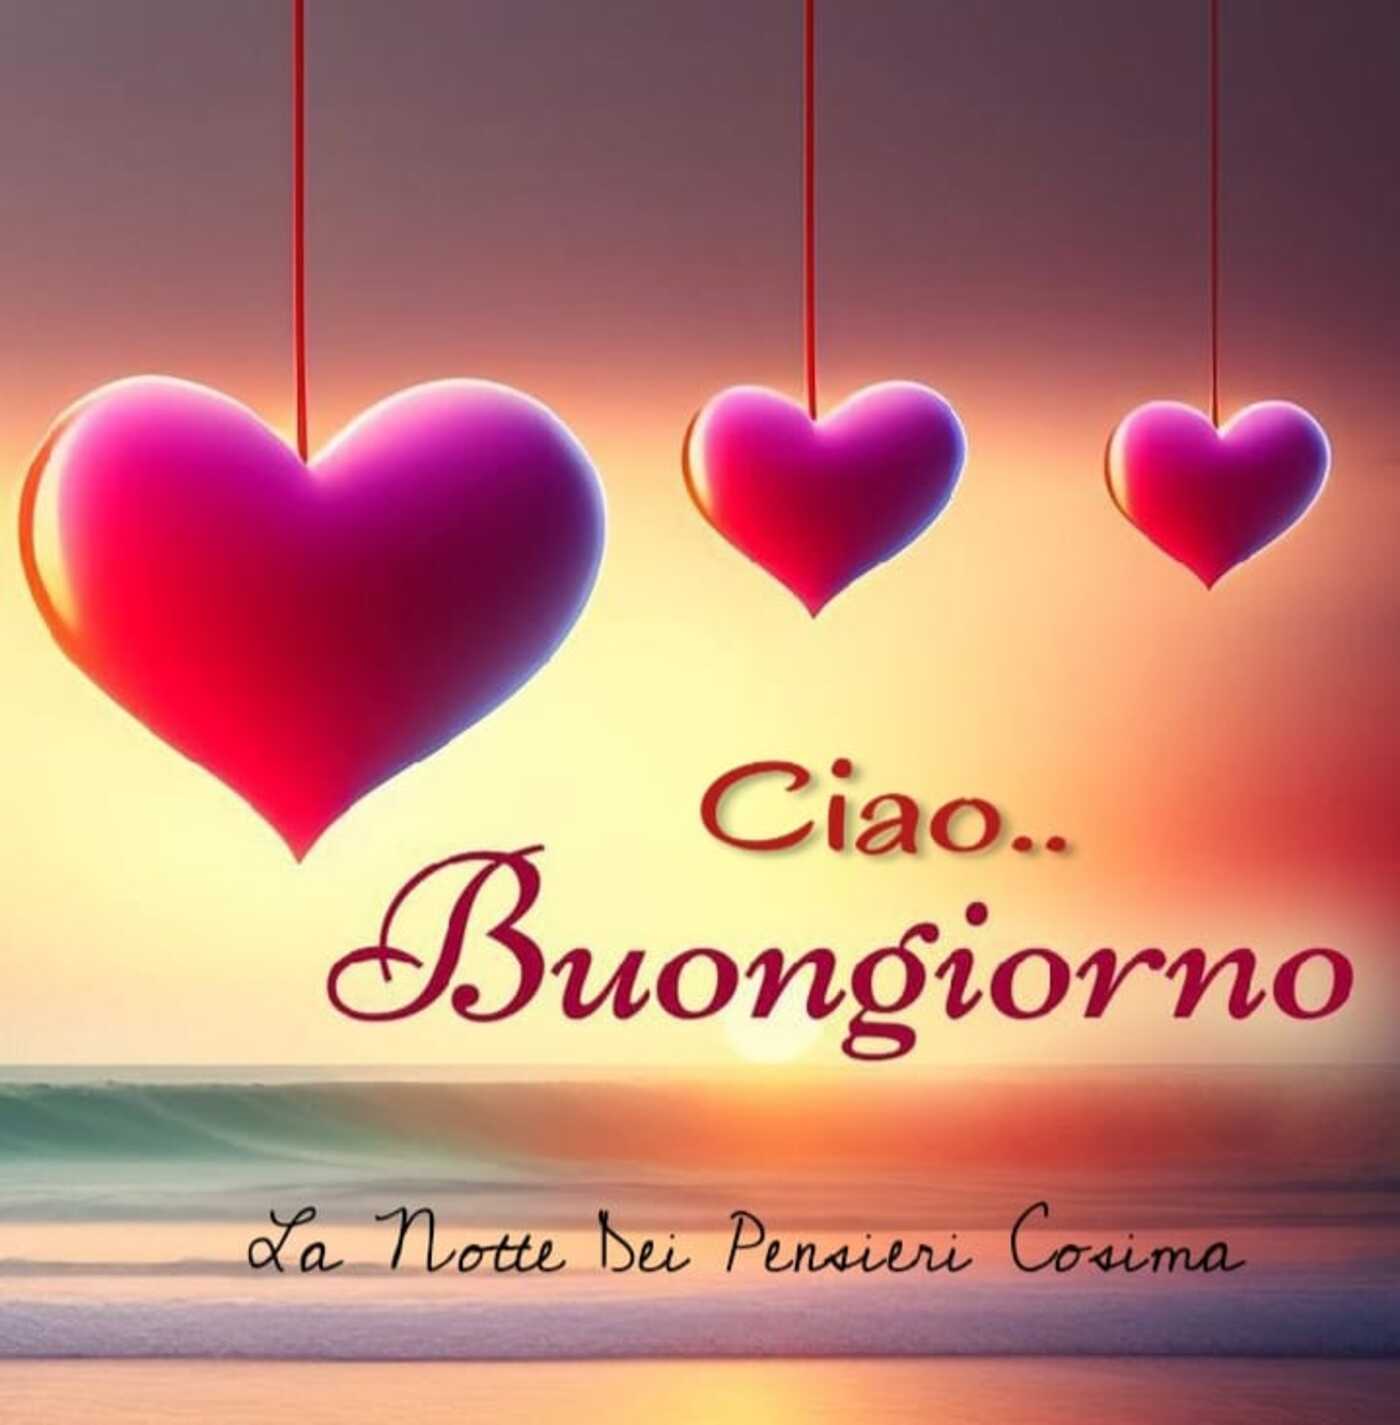 Buongiorno Archives - CiaoBuongiorno.it